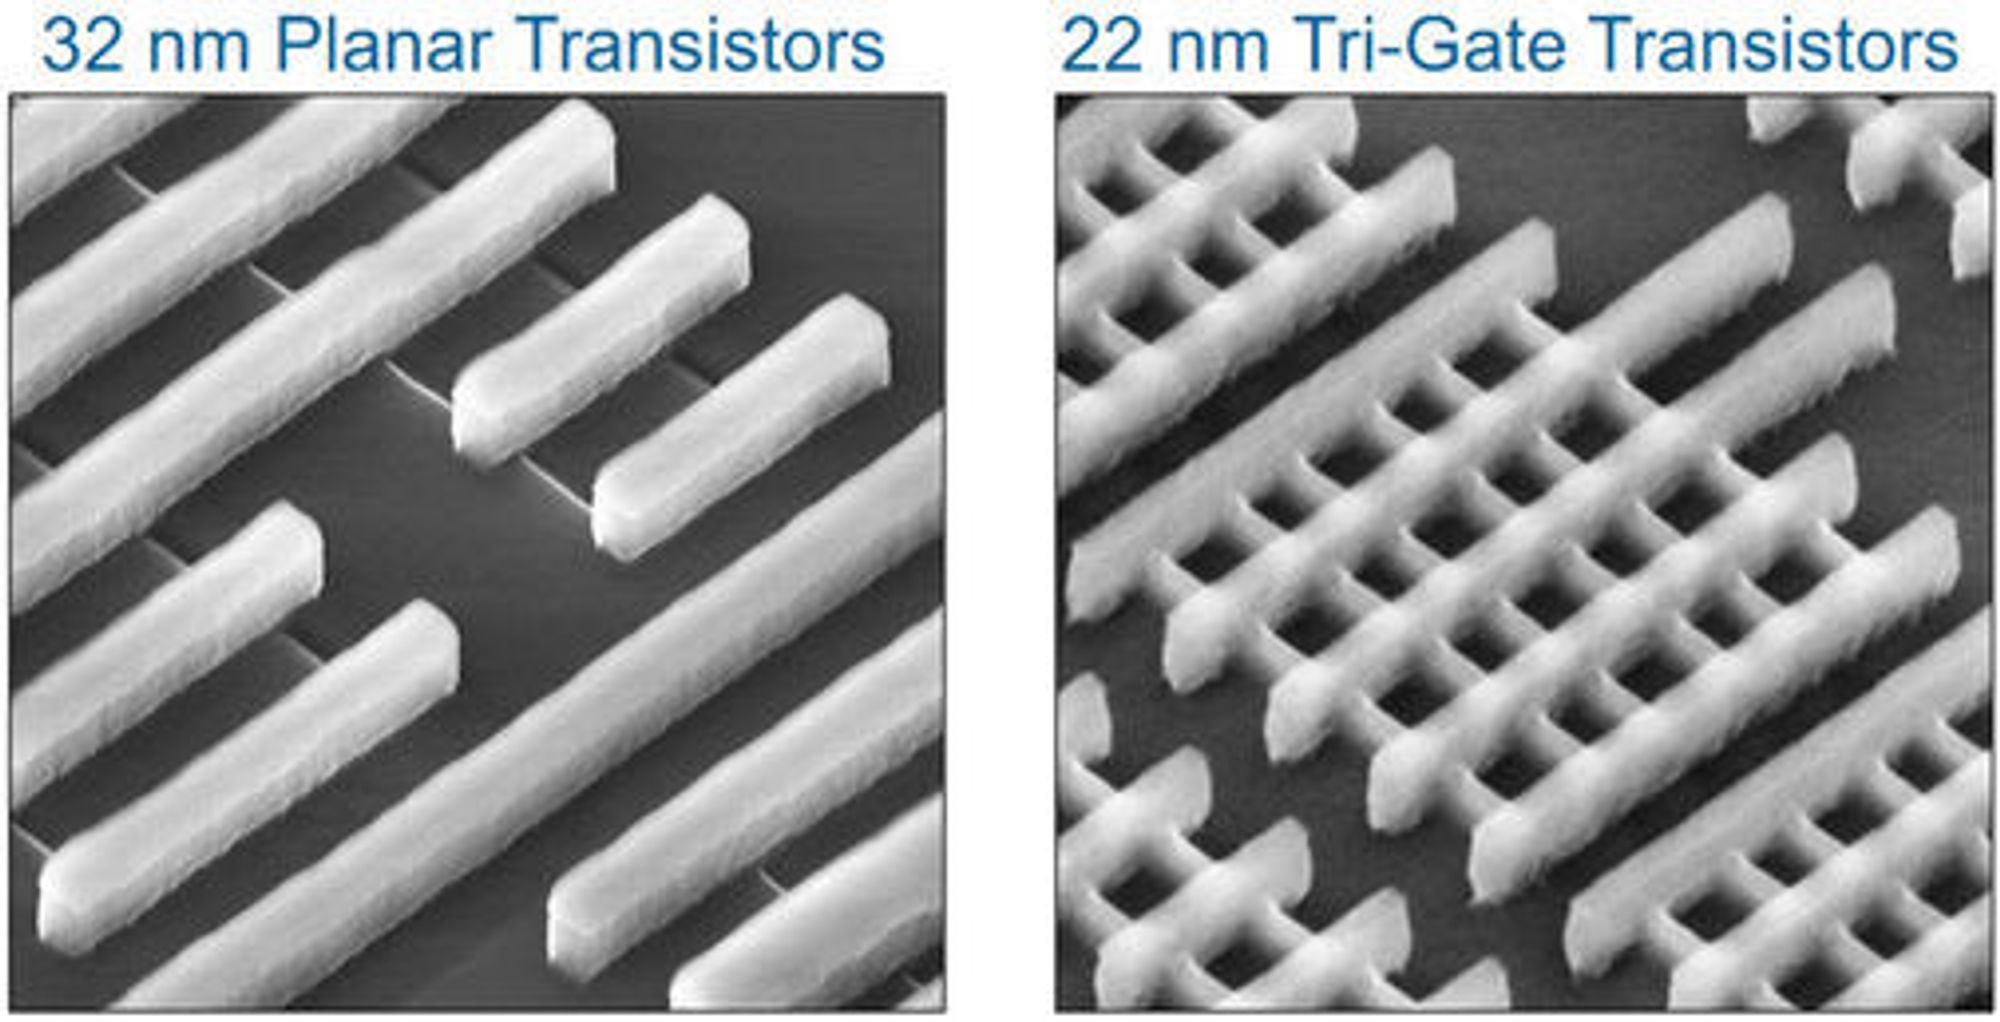 Mikroskopbilde av 32 nm planartransistorer og 22 nm Tri-Gate-transistorer. I bildet til høyre går portene fra nederst til venstre og opp mot høyre, mens finnene går fra øverst til venstre og mot det nederste, høyre hjørnet.